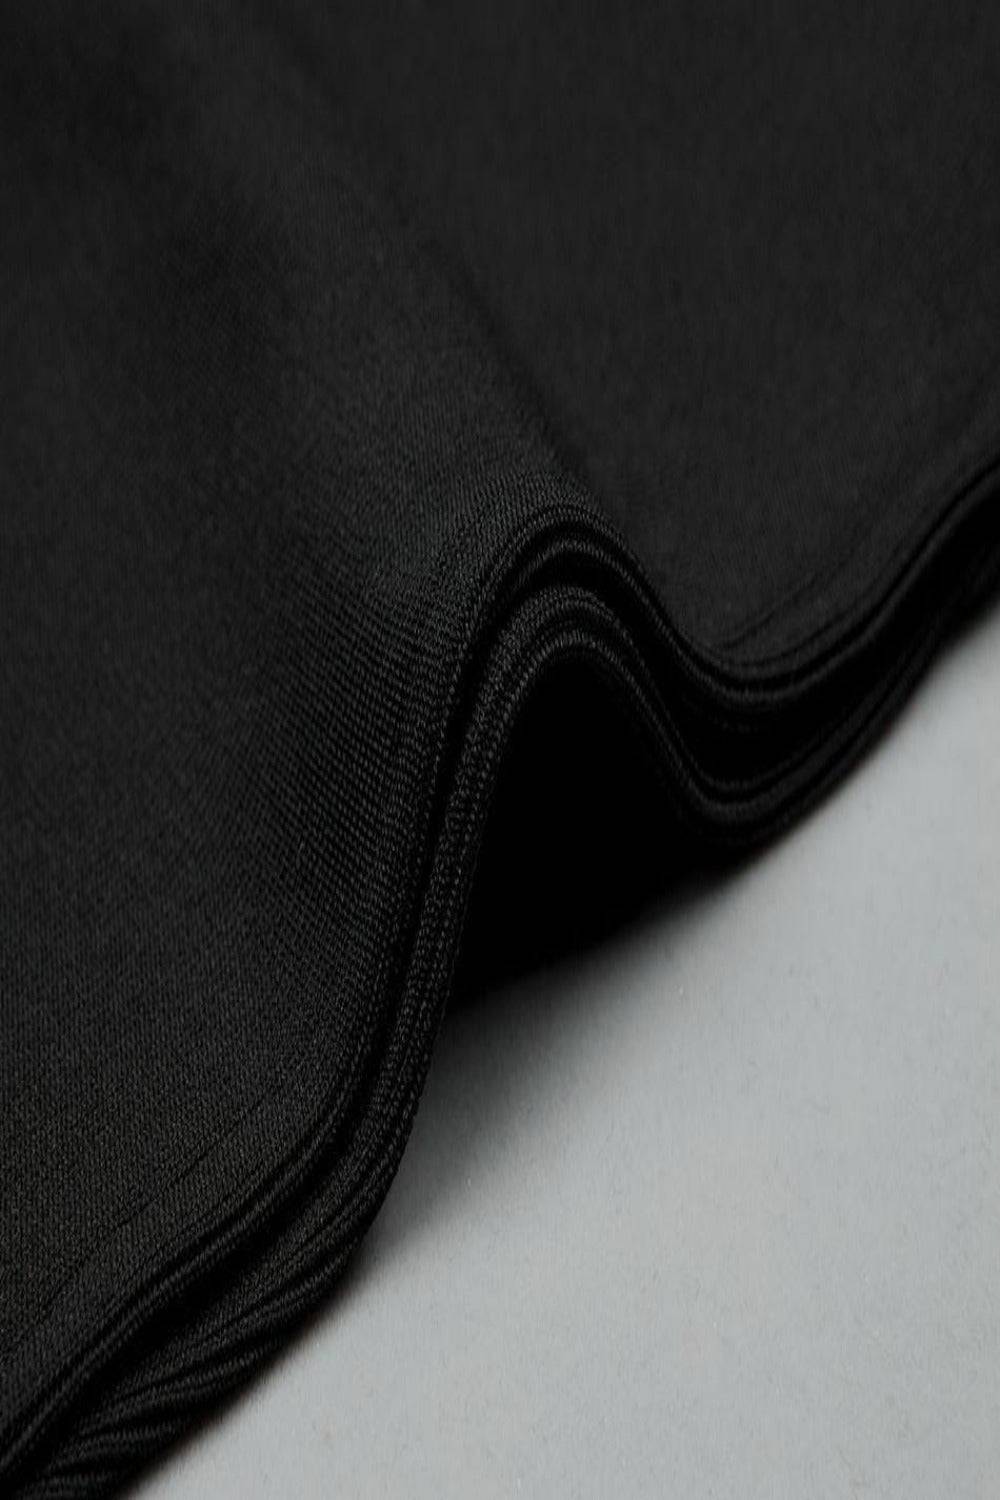 Hanna Black Lace Up Jumpsuit - TGC Boutique - Black Jumpsuits